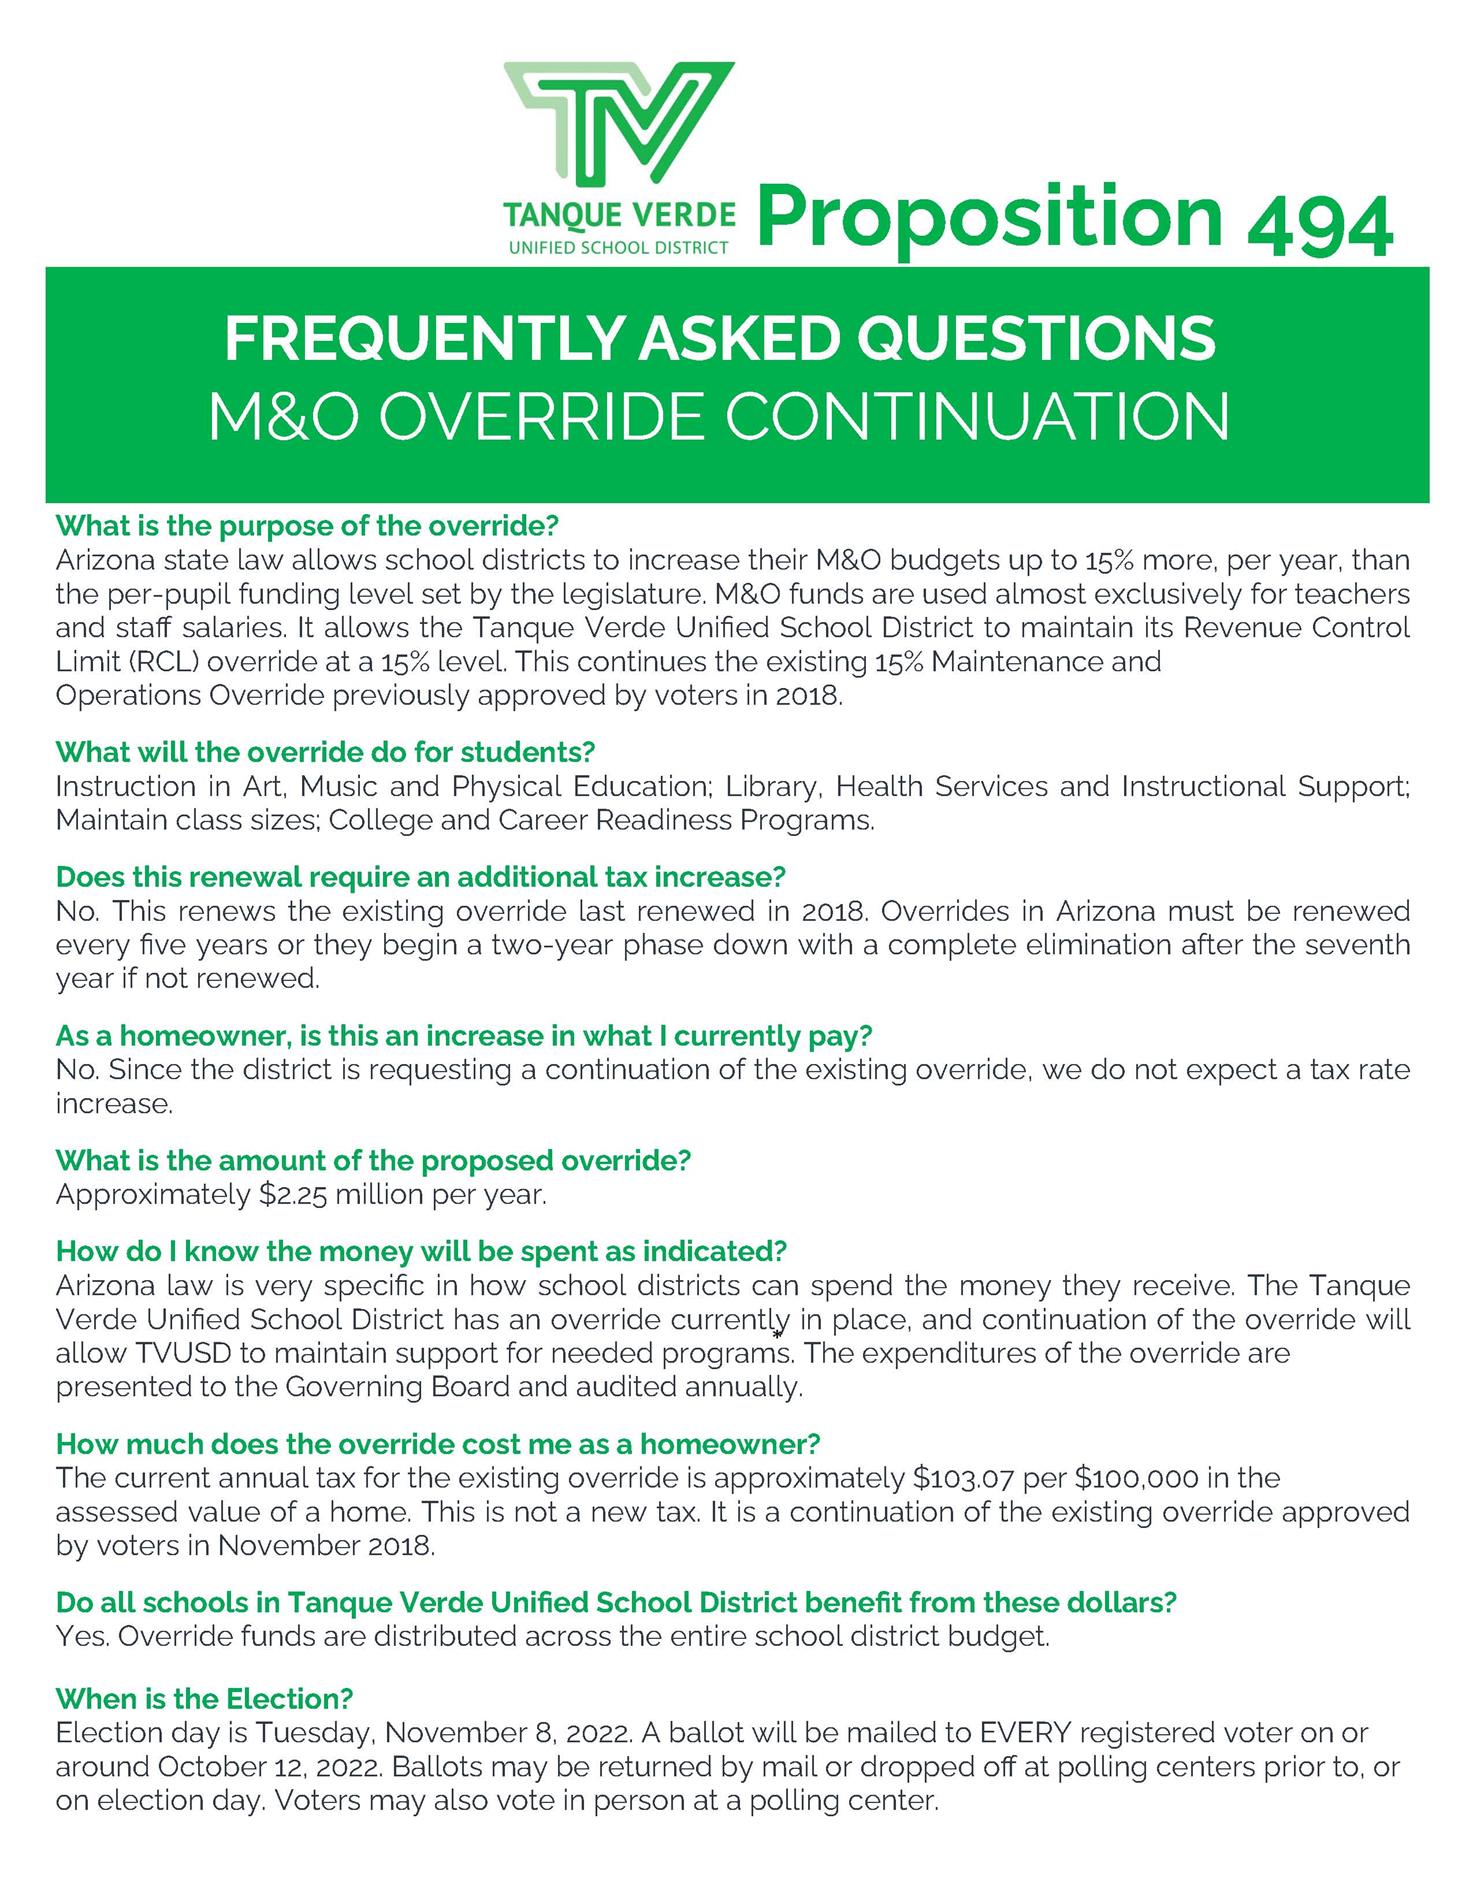 M&O Override FAQ